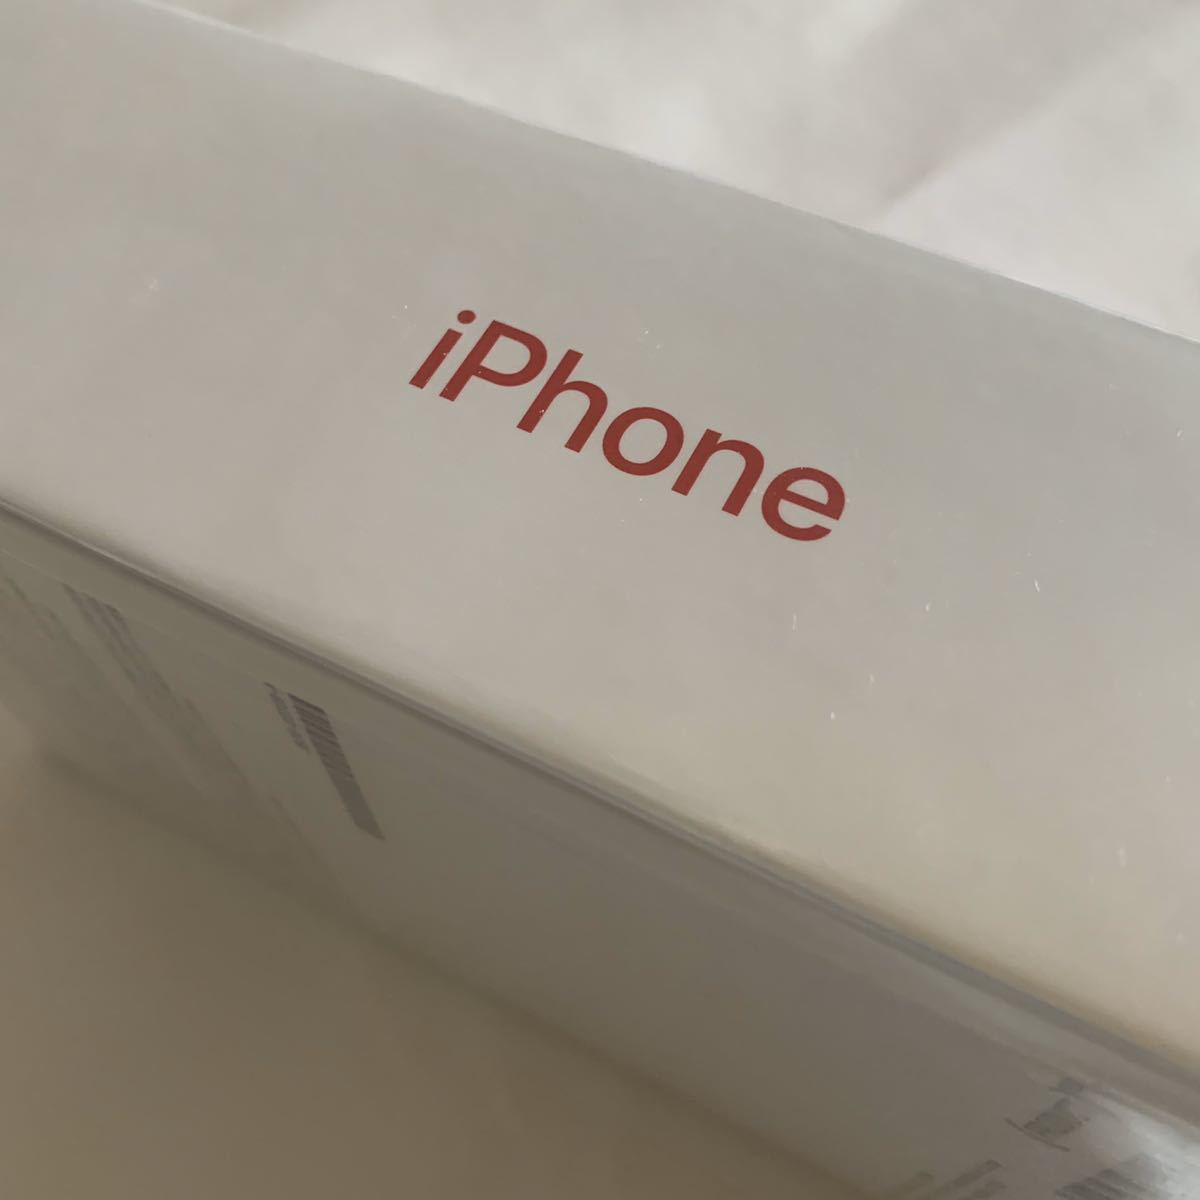 2021新作モデル 【新品未開封】Apple iPhone 7 Prodact Red 128gb MPRX2J/A【SIMロック解除済/シムフリー】 iPhone